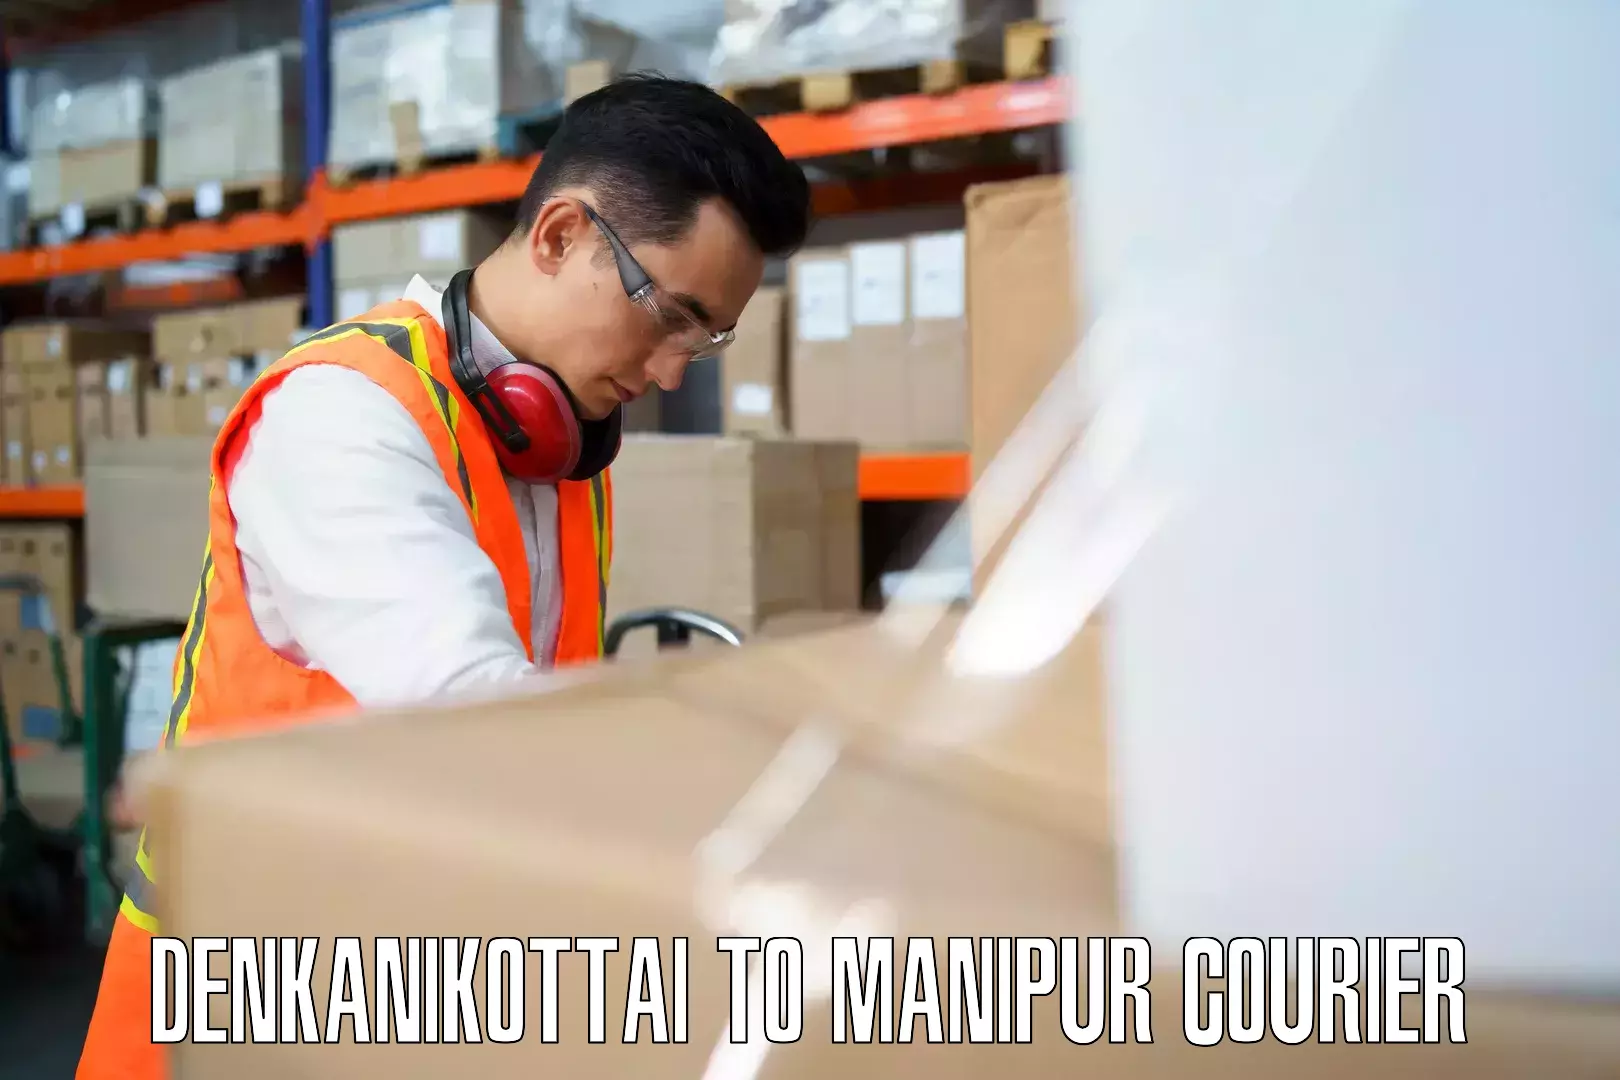 Flexible luggage courier service Denkanikottai to Kangpokpi